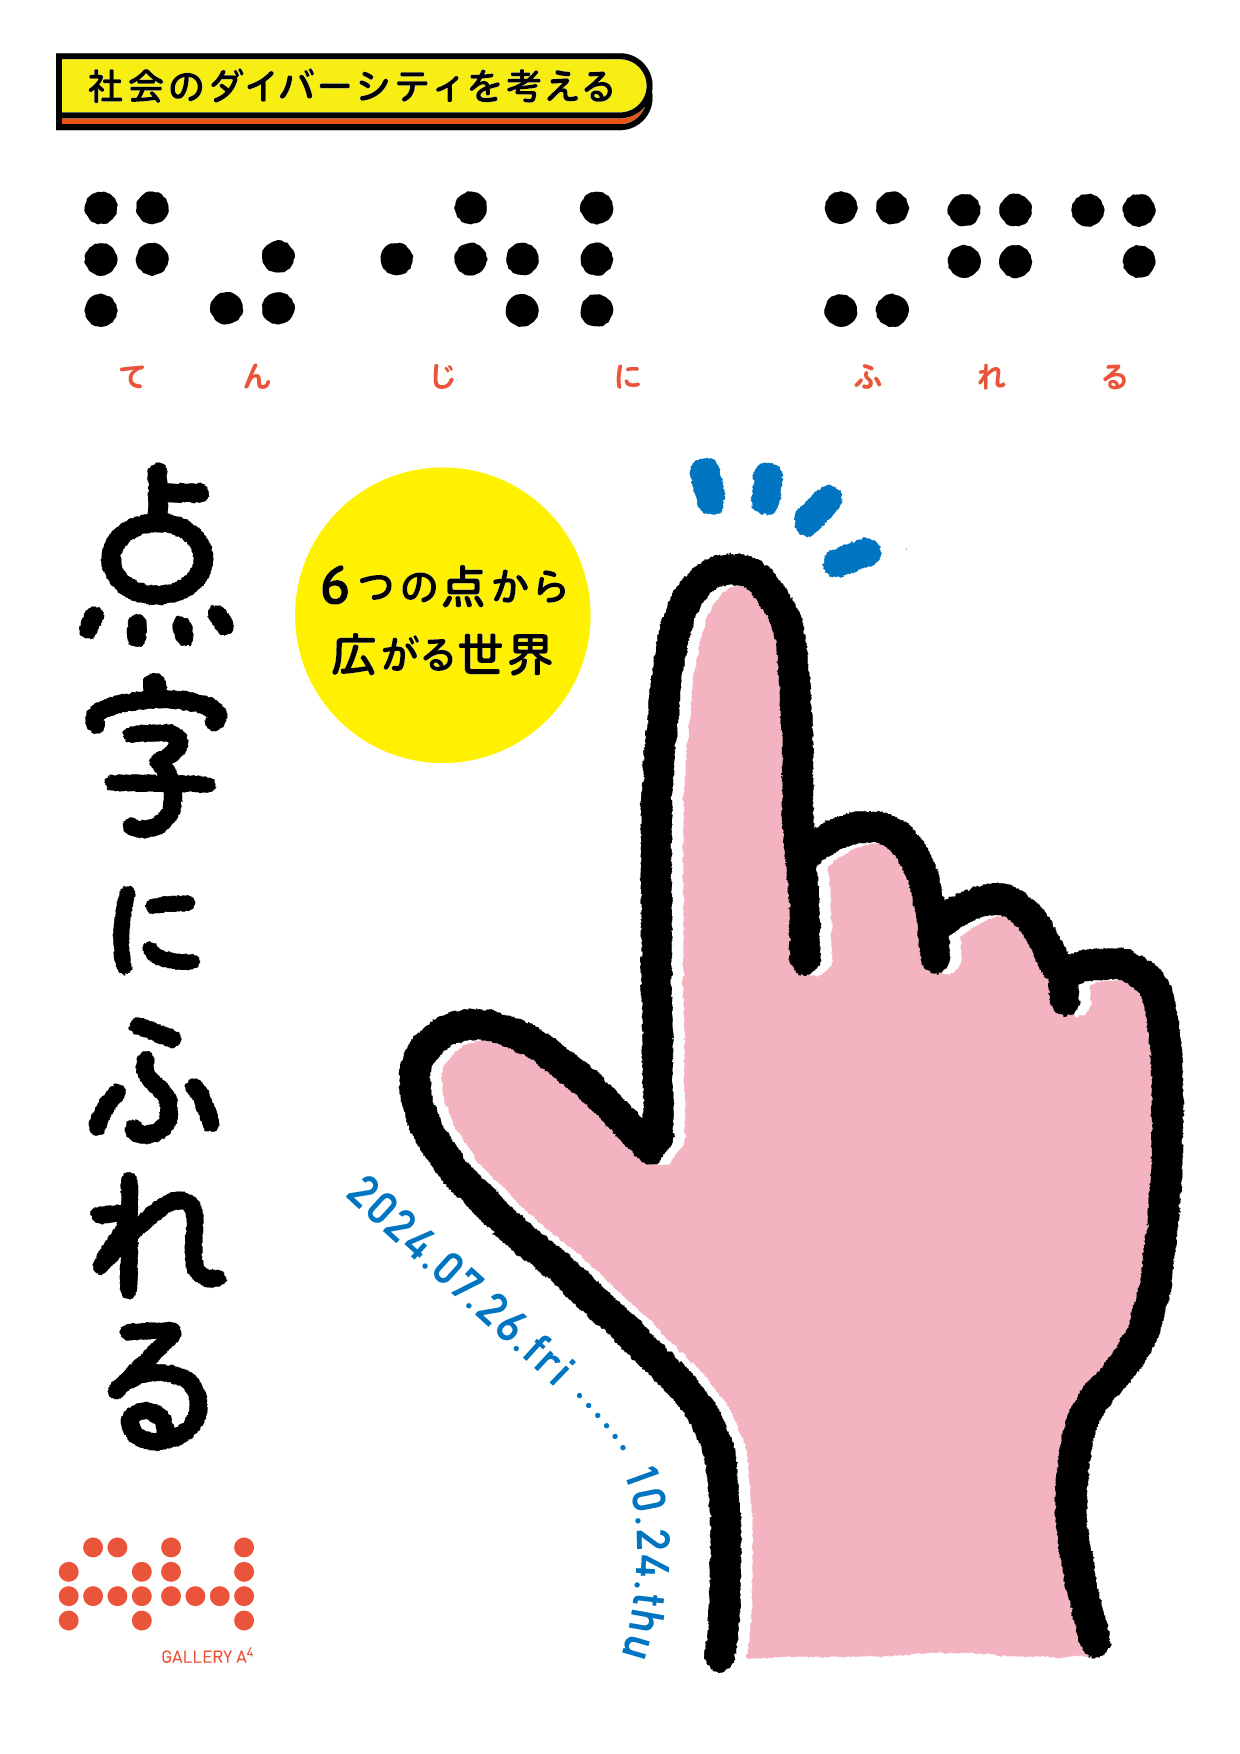 「点字にふれる展」フライヤー表。大きな指で点字を指差すイラストが描かれている。